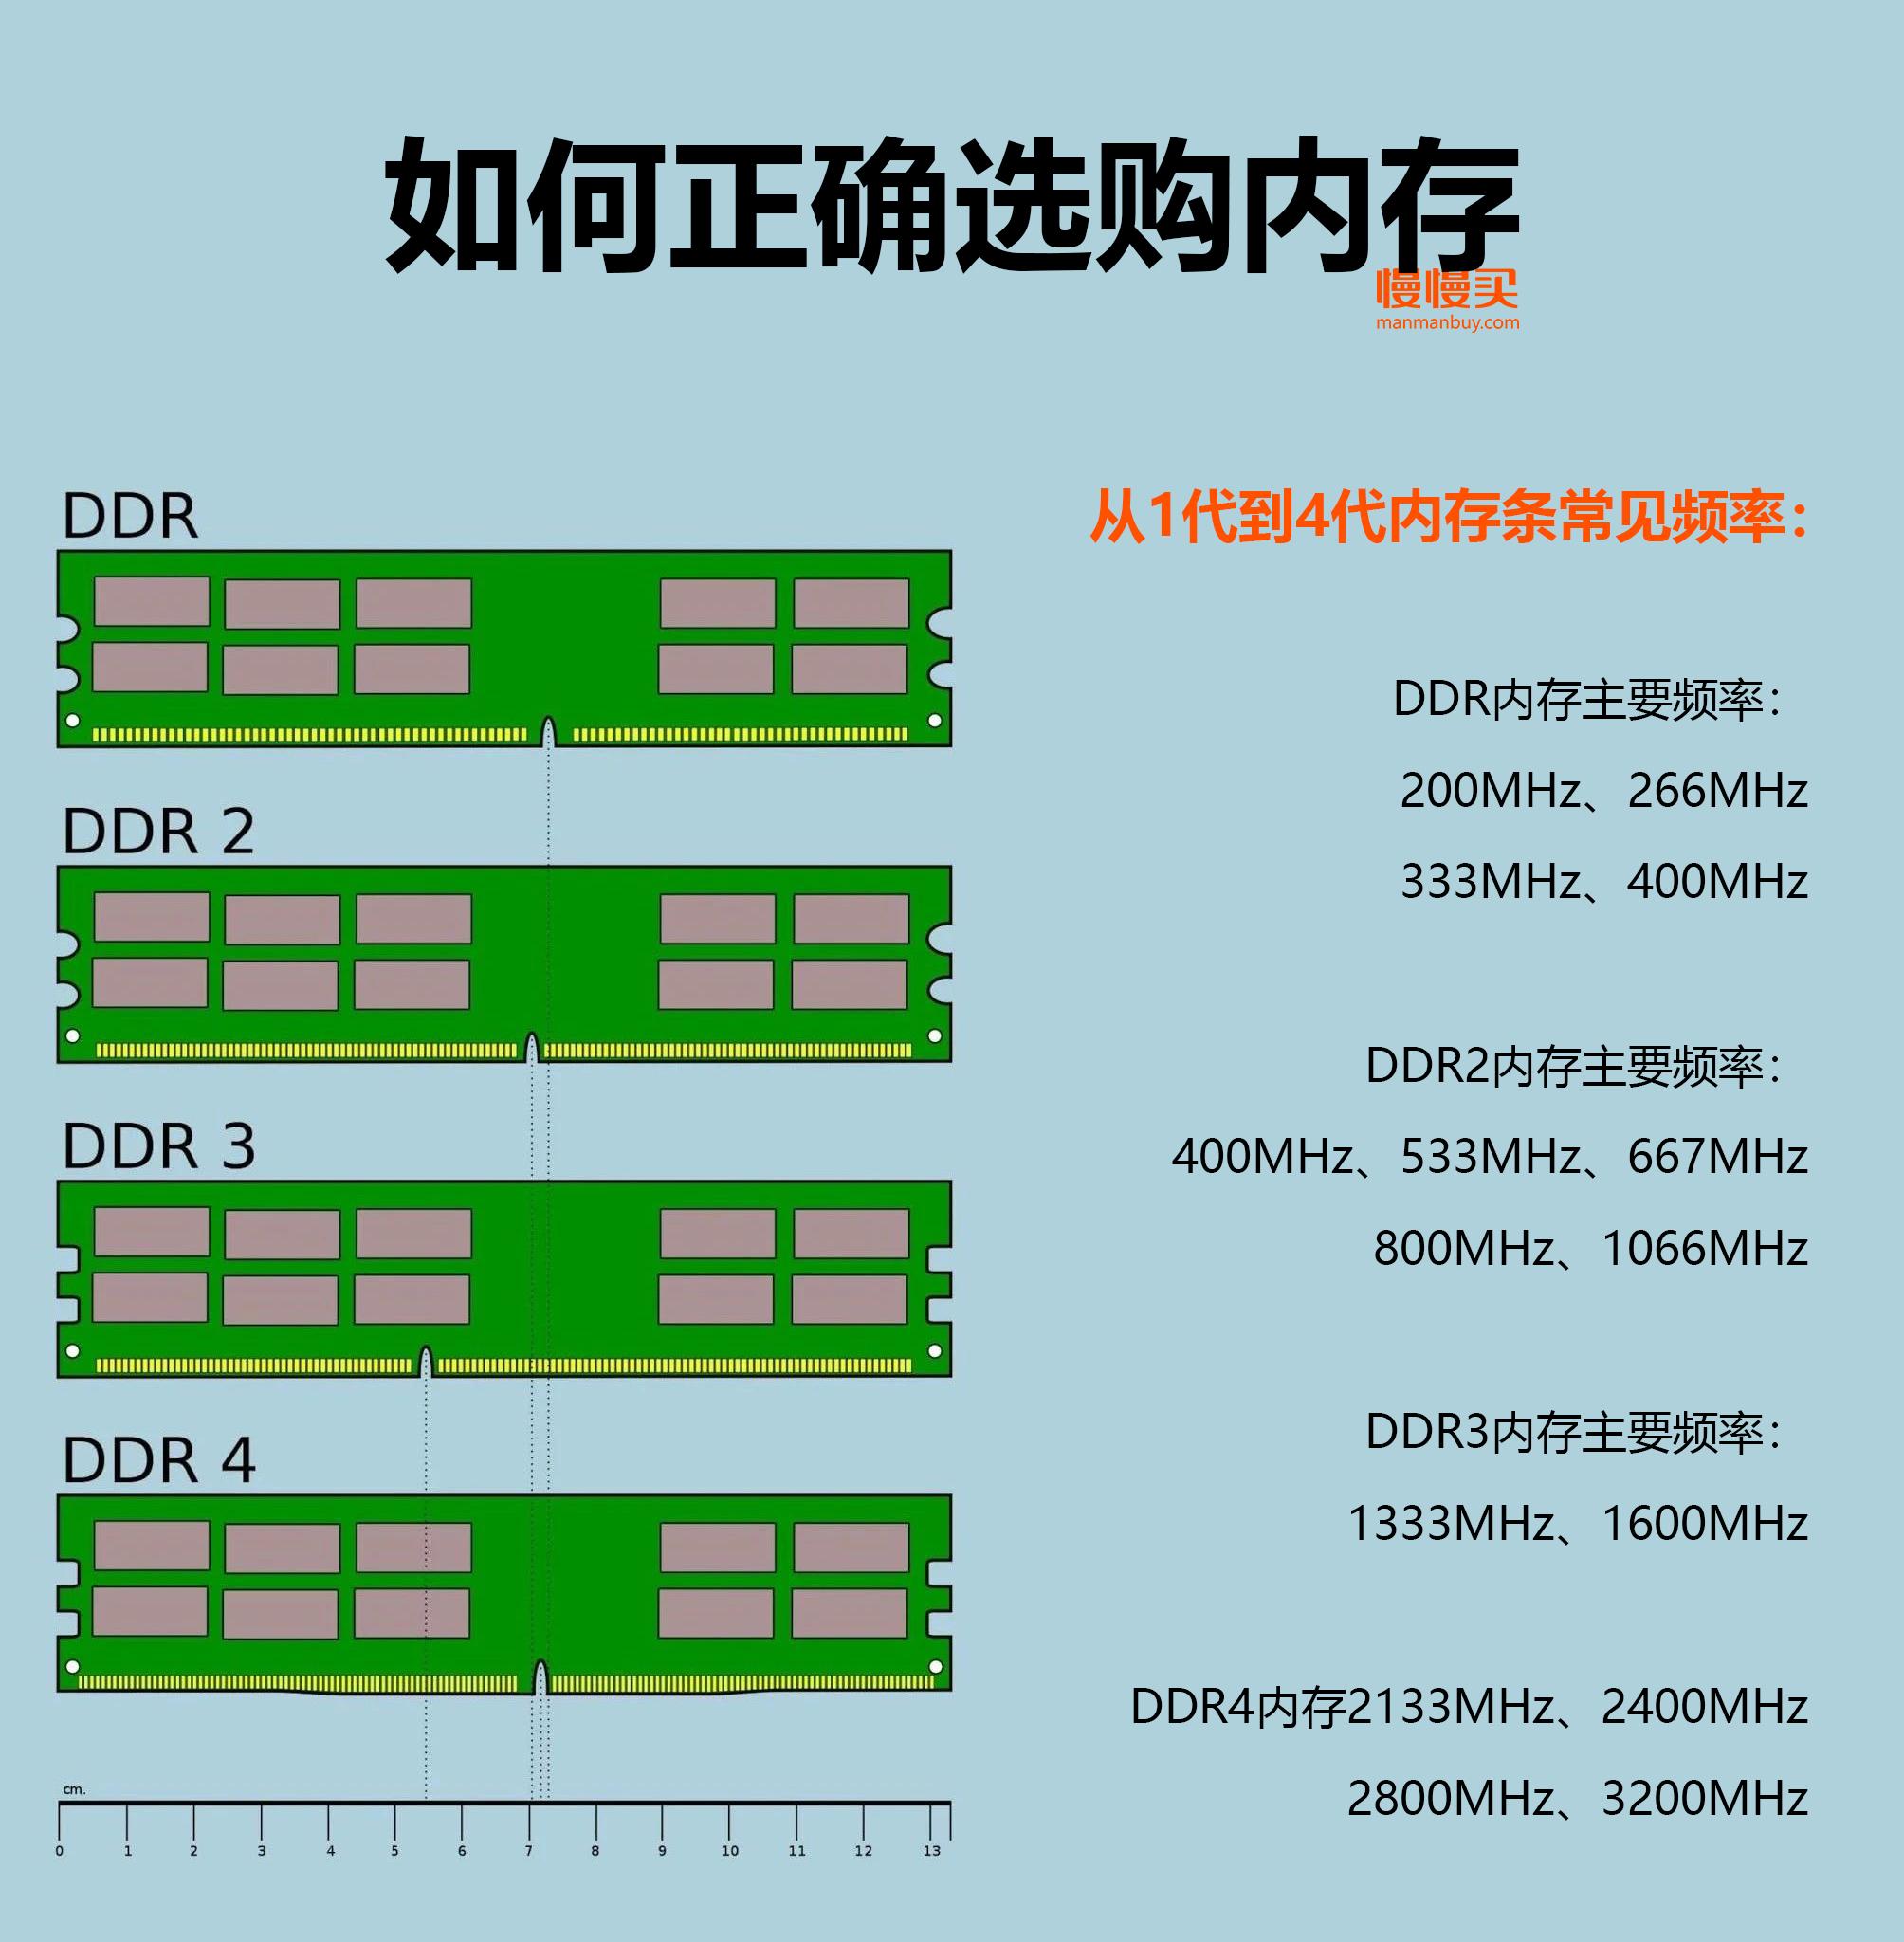 解析初代 DDR4 内存延迟现象：为何电脑会卡顿？DDR4 与 DDR3 延迟对比